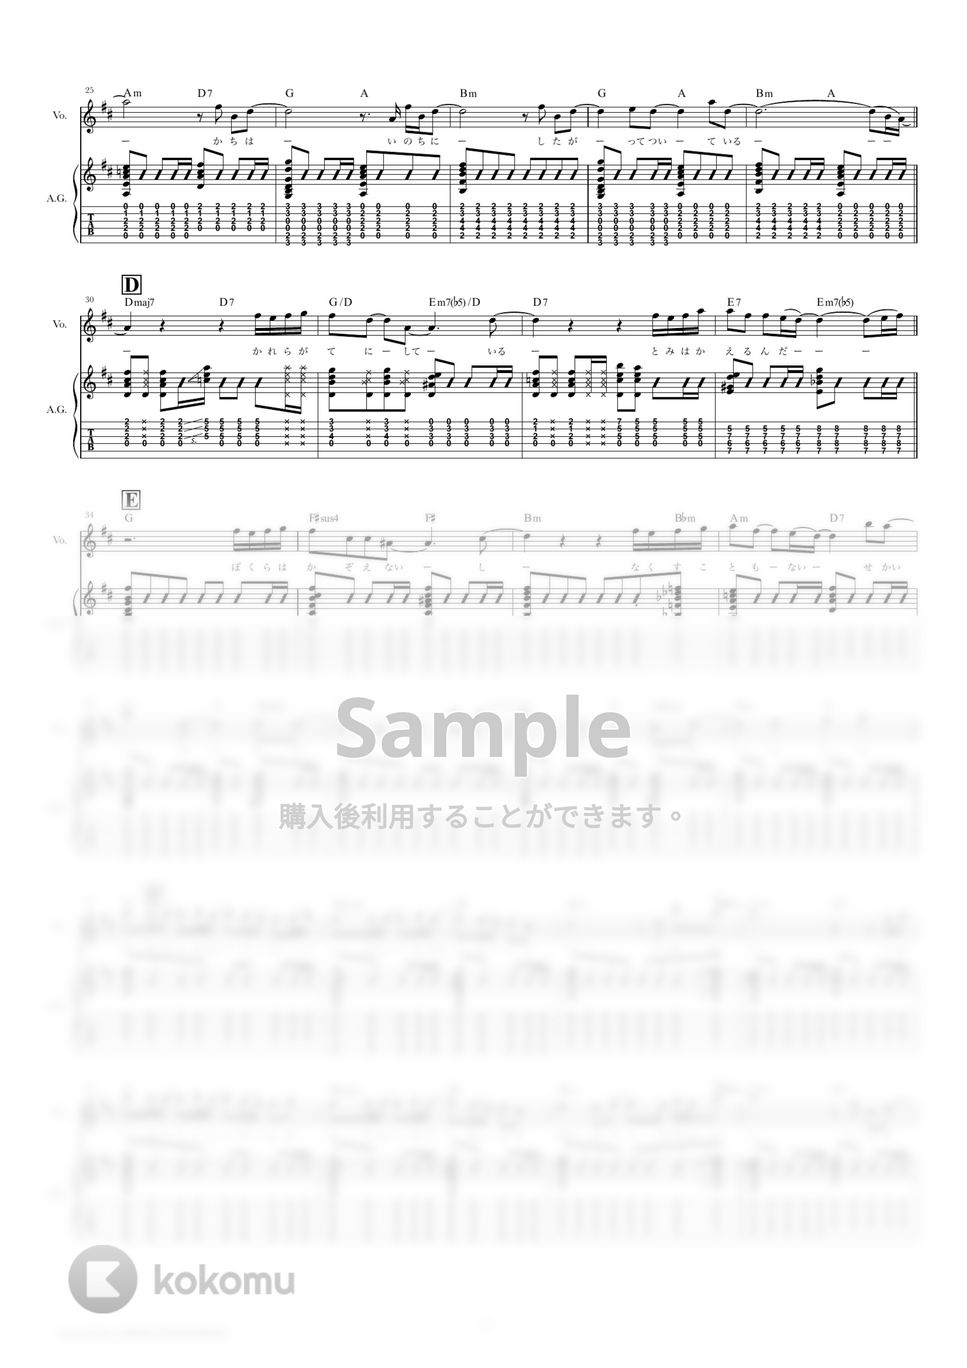 椎名林檎 - ありあまる富 (ギタースコア・歌詞・コード付き) by TRIAD GUITAR SCHOOL